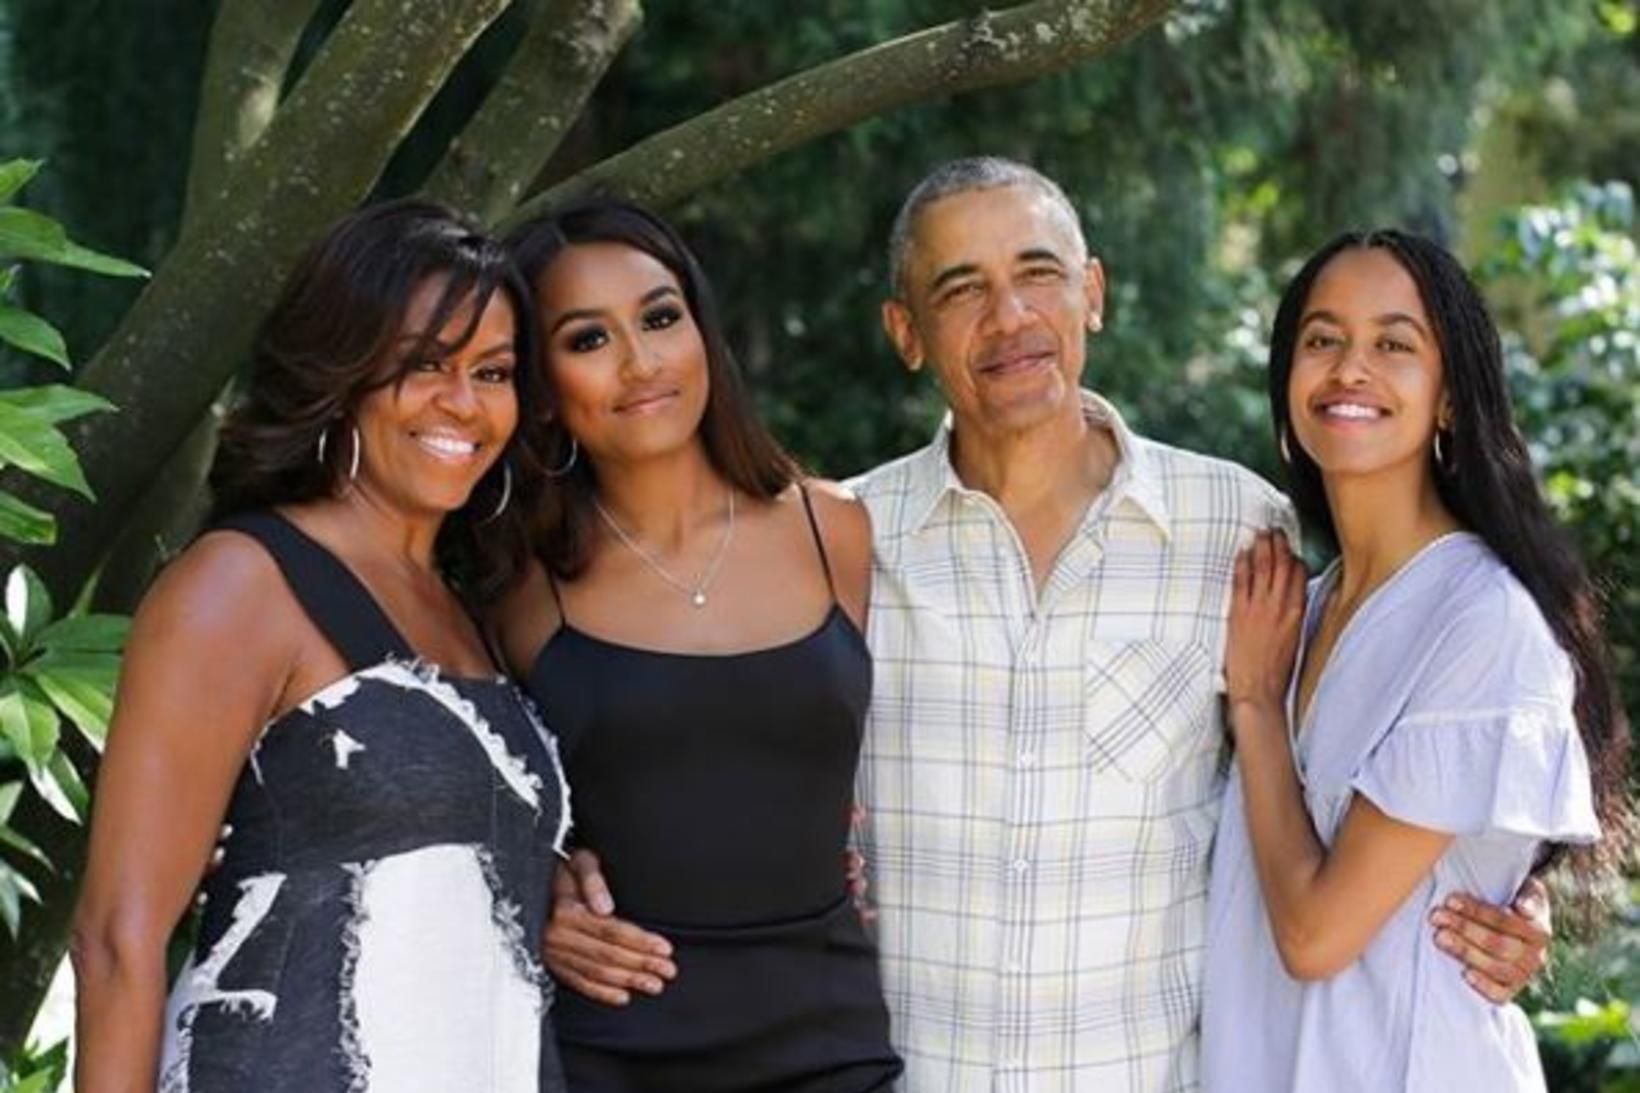 Sasha Obama stendur á milli foreldra sinna.